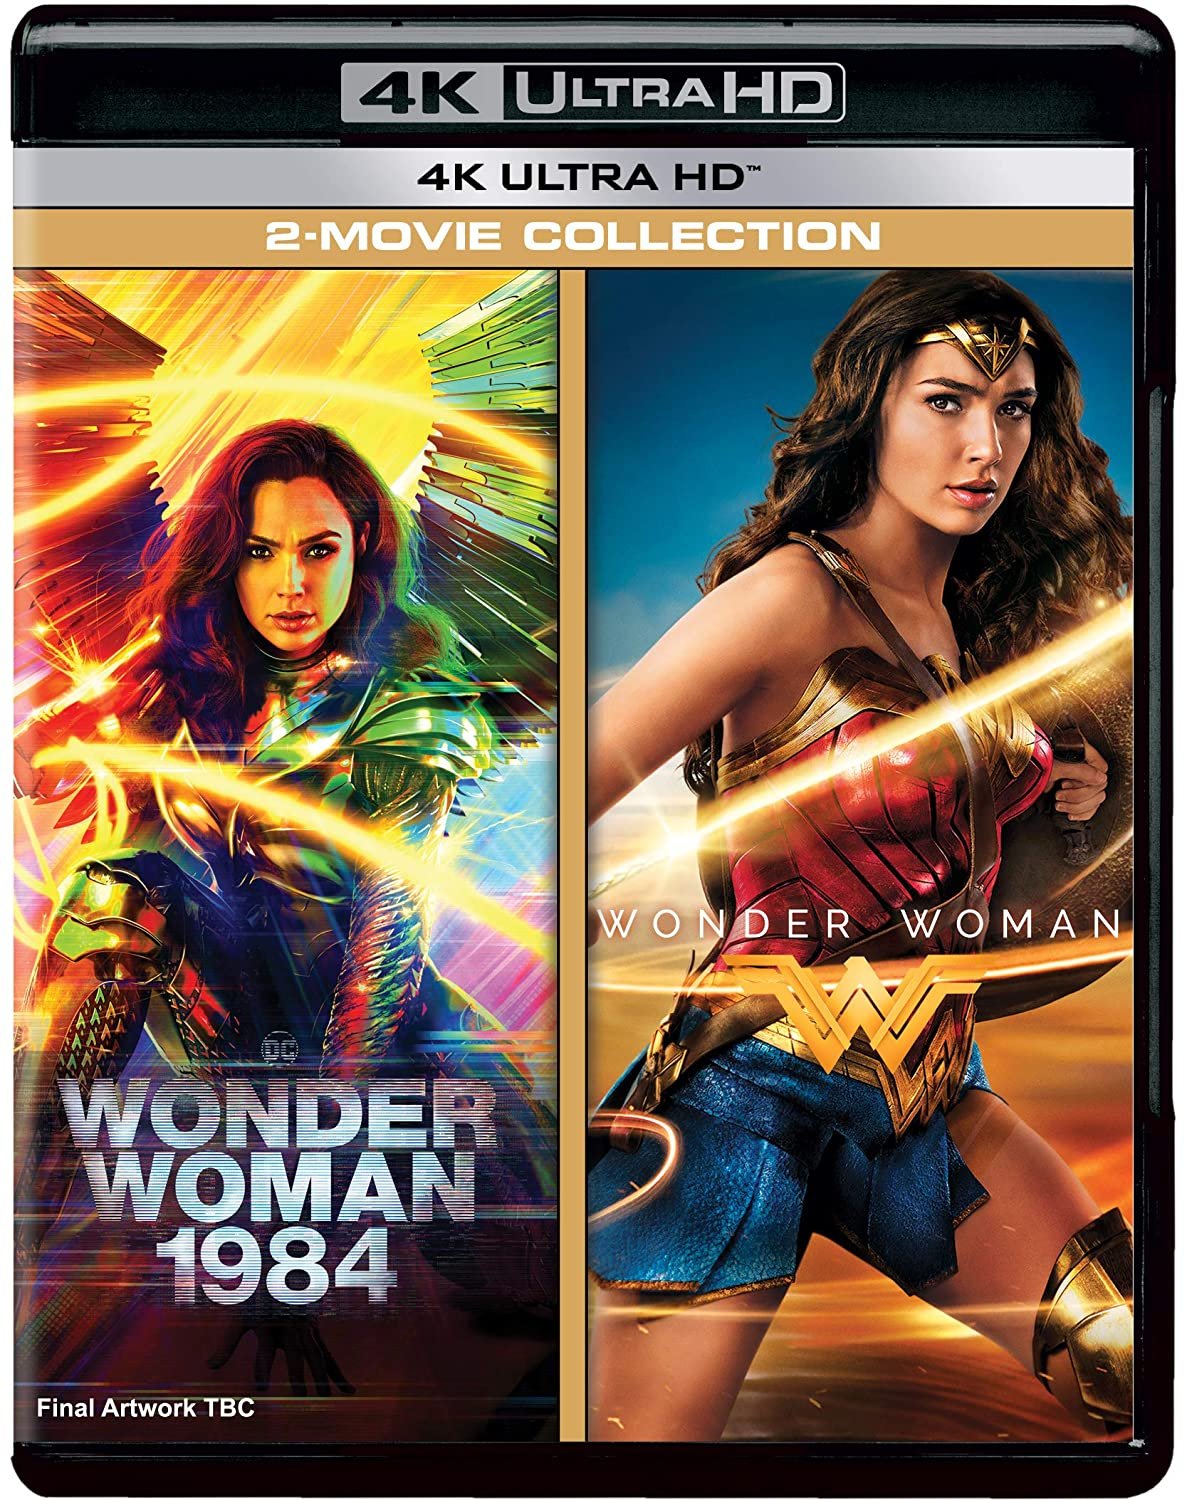 Ultra Hd Blu Ray Wonder Woman 1984 Ww84 4k Ultra Hd Blu Ray 3d 2d At Amazon India T Co Elymzkgcug T Co Ypzjahlhjn Twitter